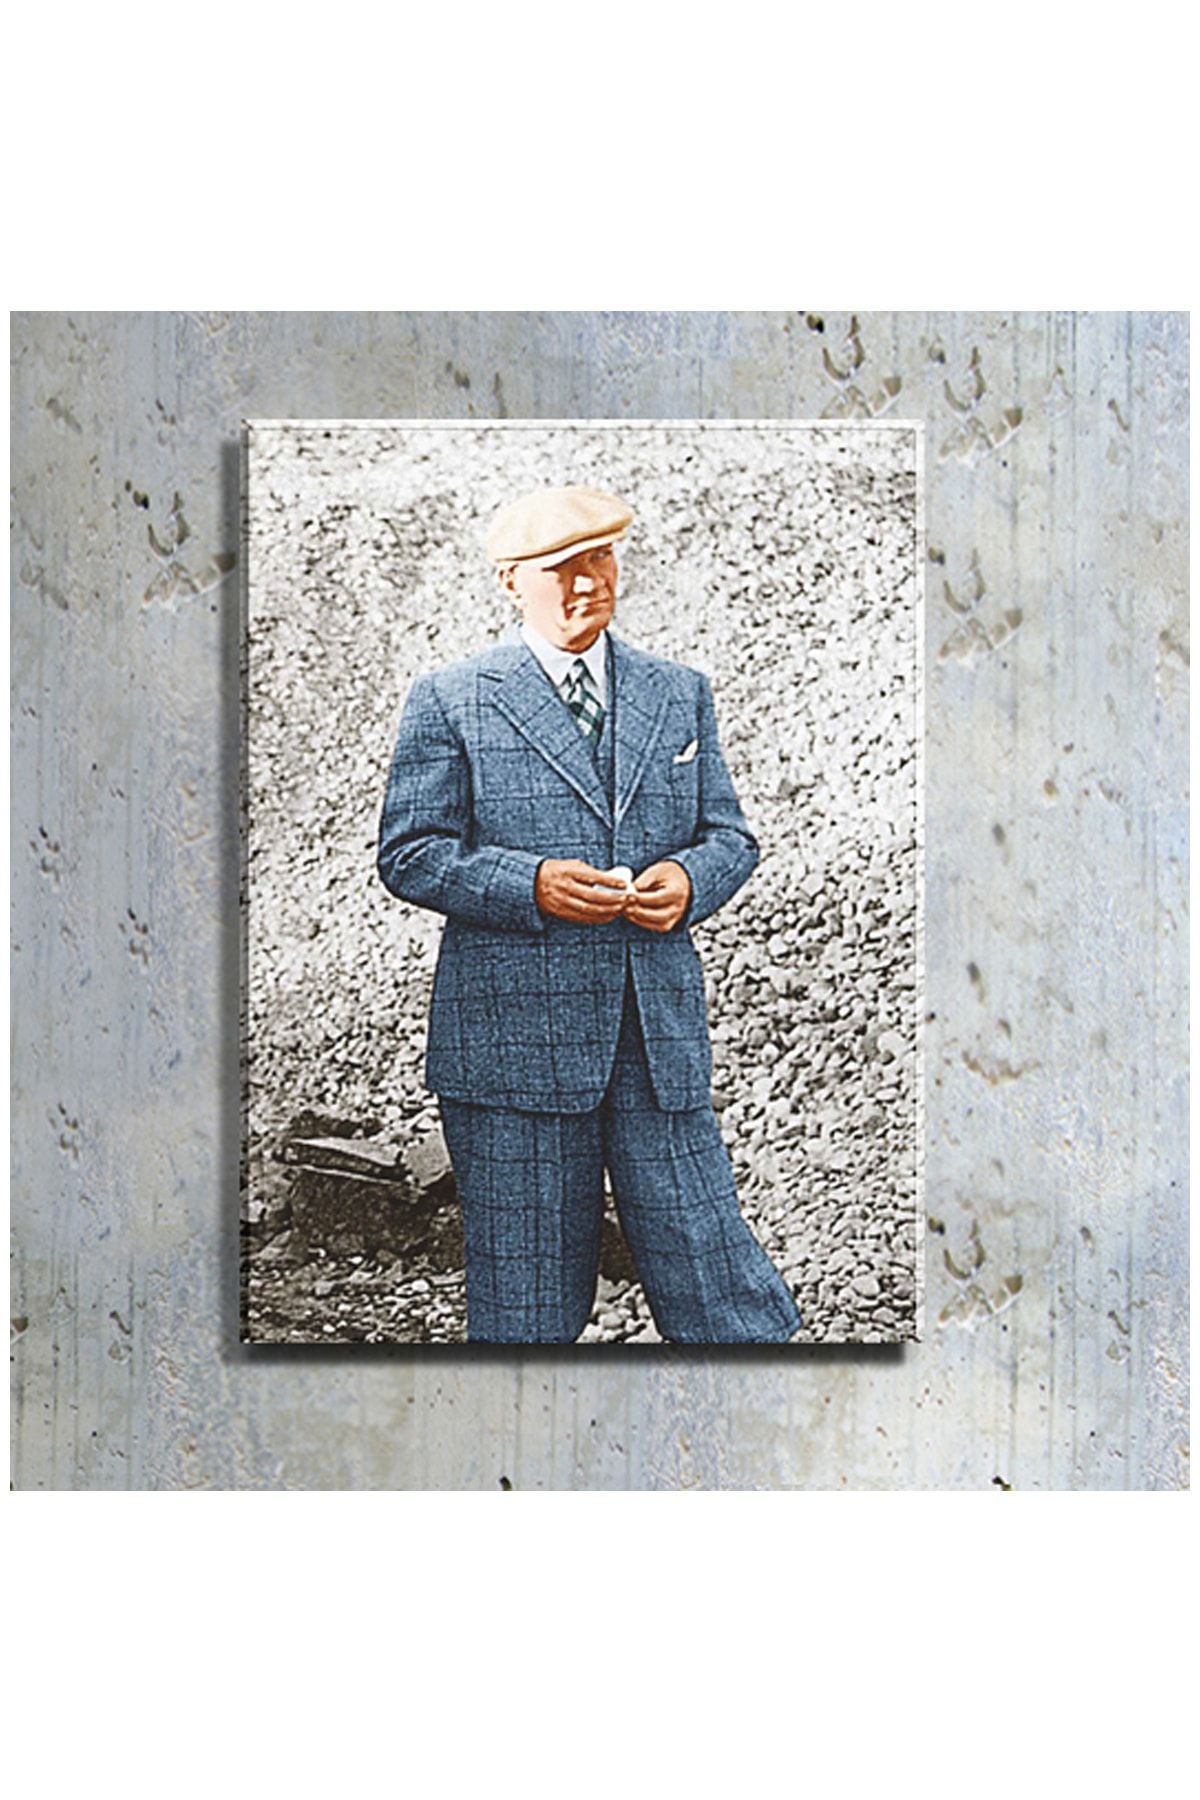 mağazacım Atatürk Mavi Takım Elbiseli Boy Resmi (80x110 Cm) Kanvas Tablo Tbl1217